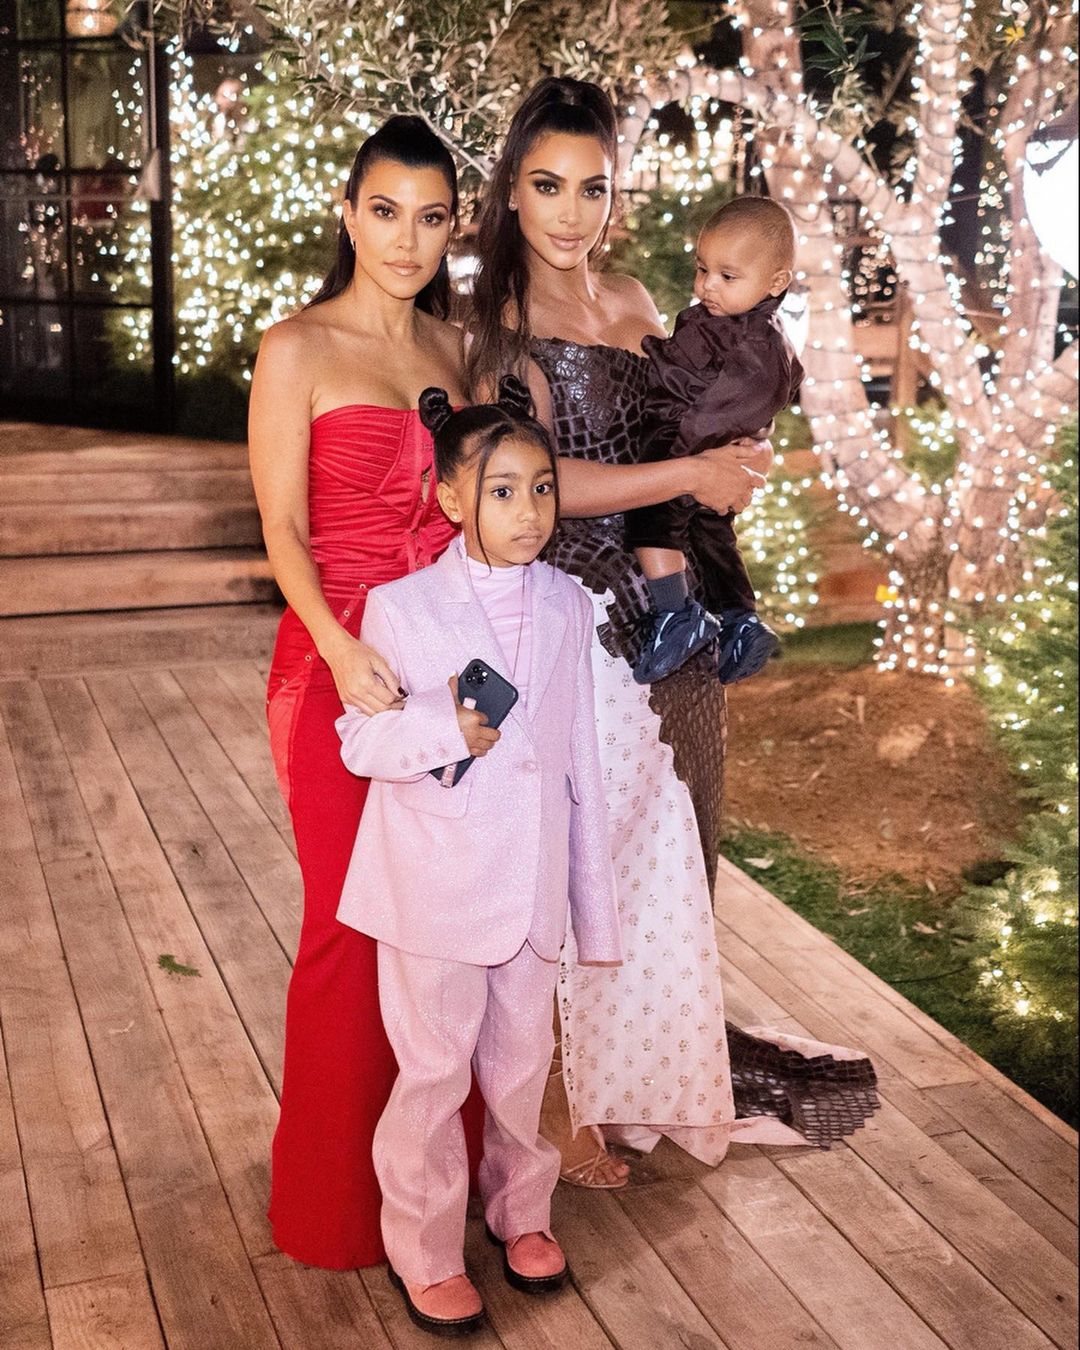 En 2019 la fiesta tuvo lugar en la casa de Kourtney Kardashian | Foto: Instagram